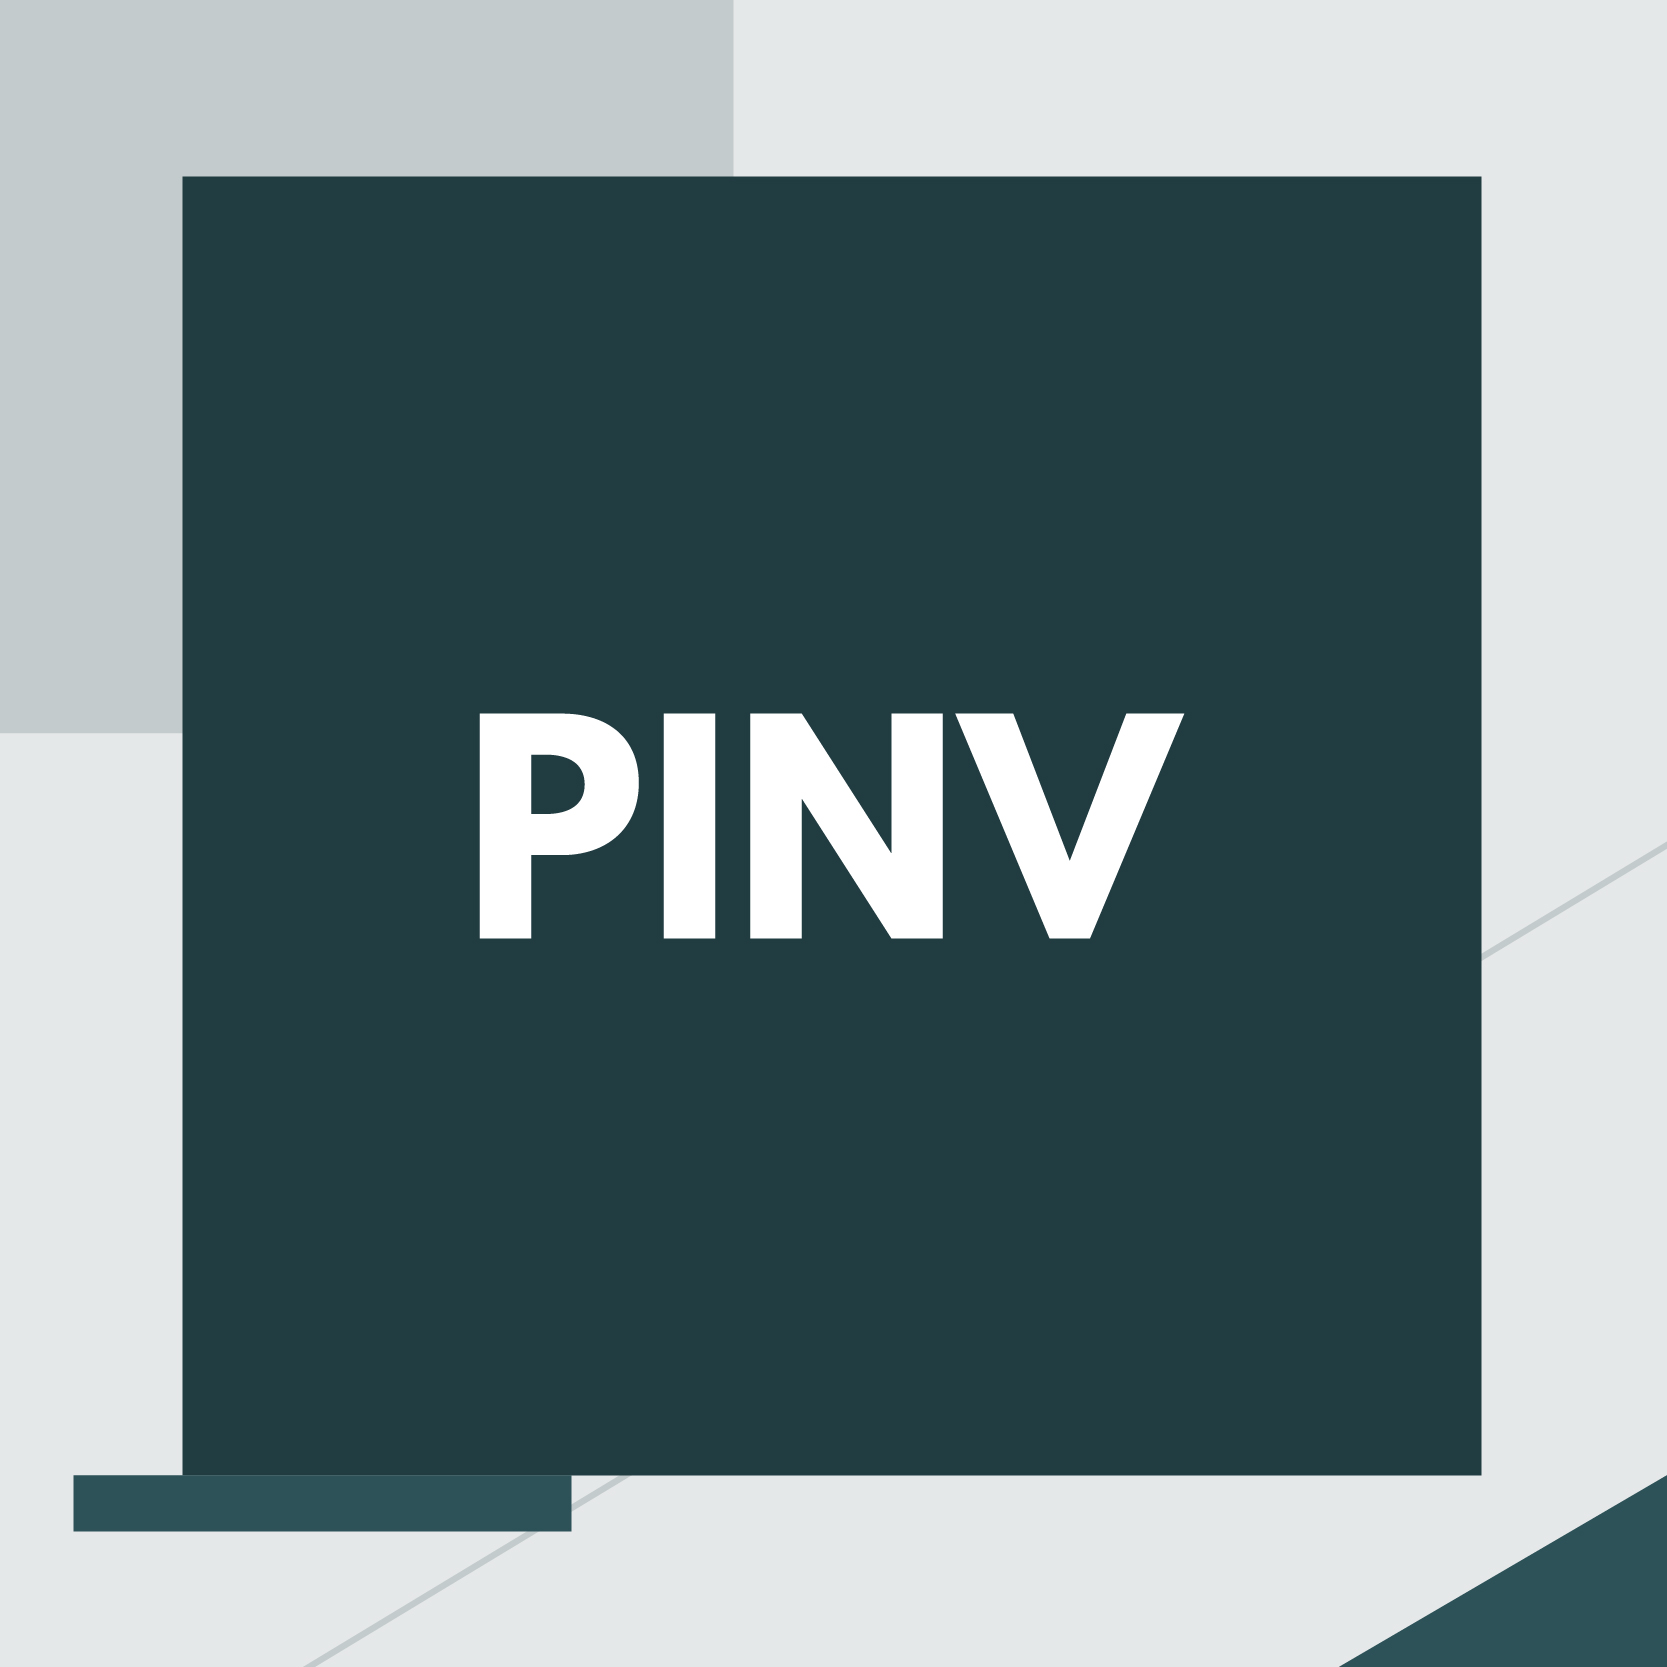 Partnership tra Pinv e Fabrick per lo sviluppo della soluzione che digitalizza la gestione finanziaria e amministrativa delle PMI